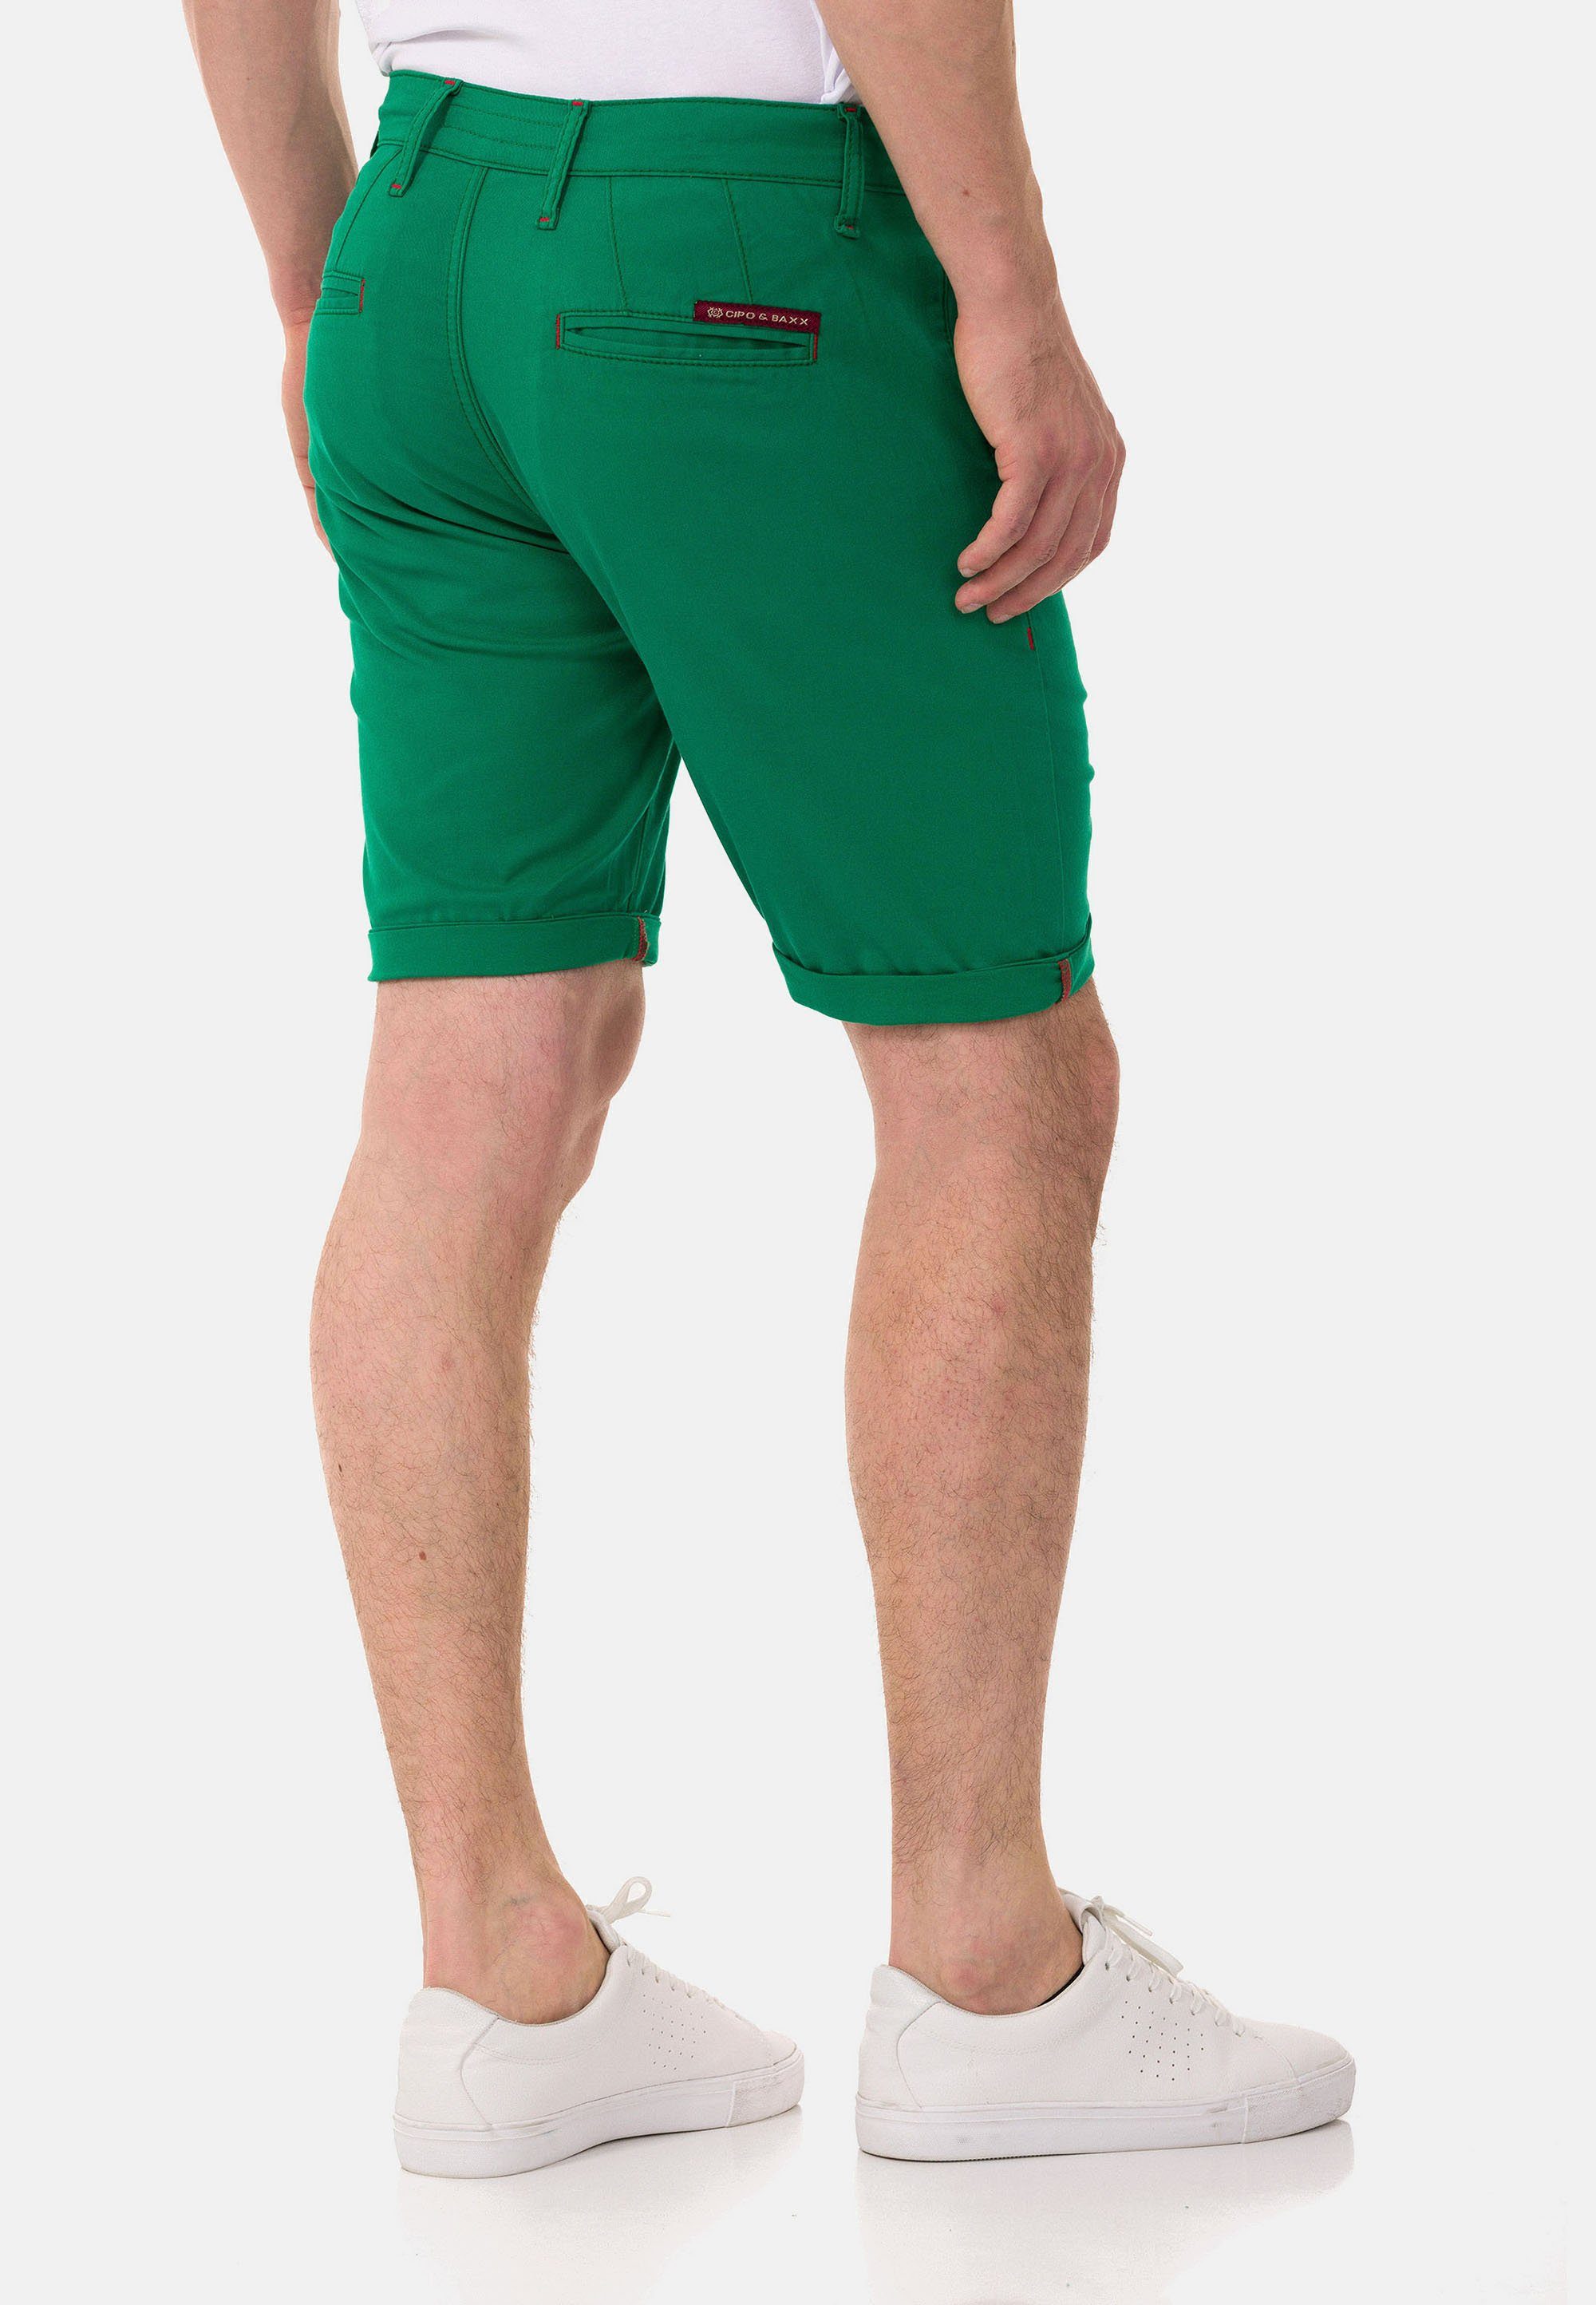 Baxx grün im einfarbigen Cipo Shorts & Look